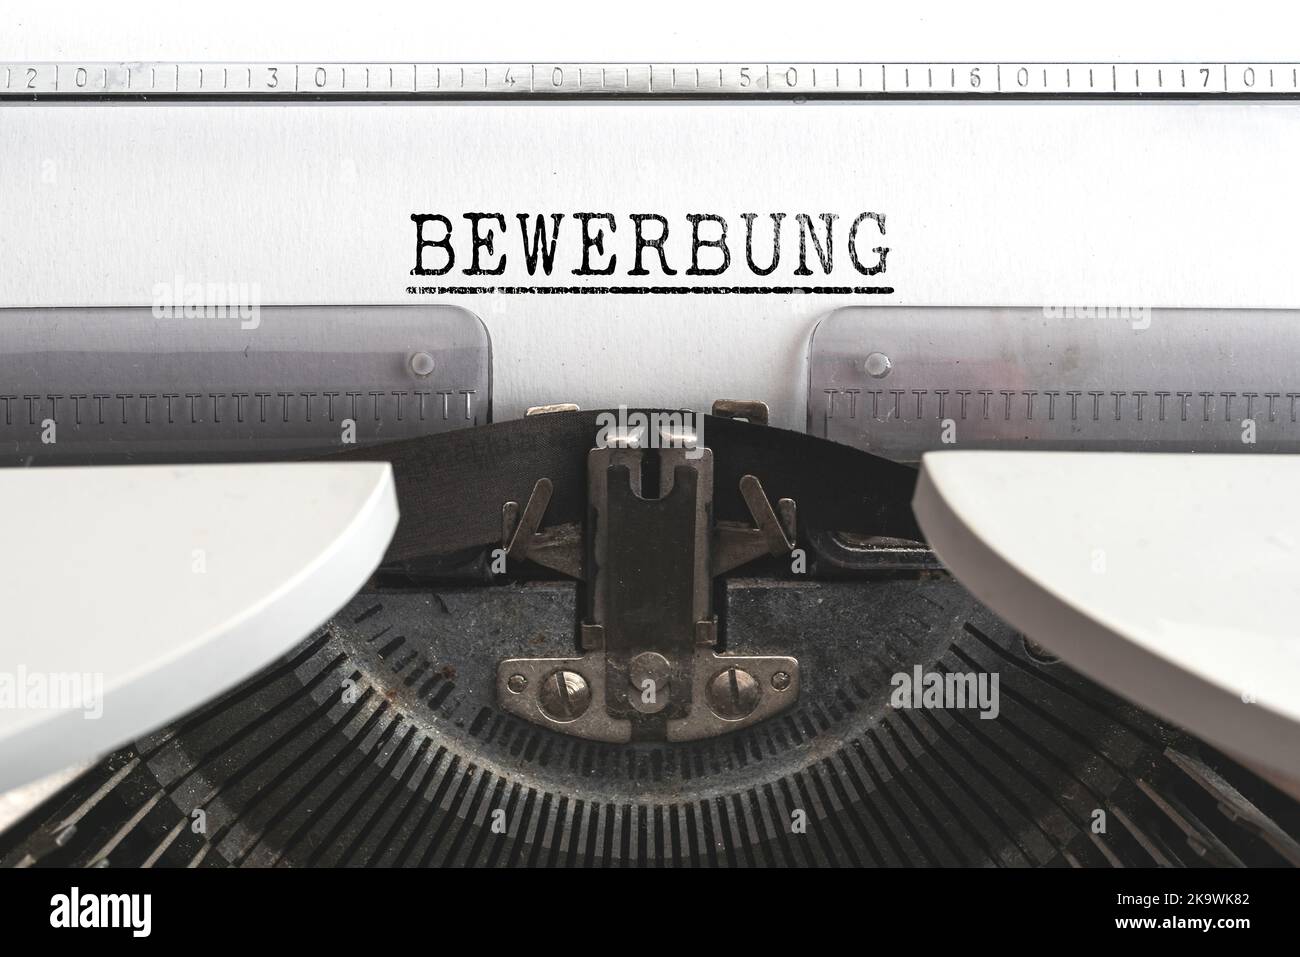 Vista ravvicinata della parola BEWERBUNG, tedesca per applicazione di lavoro, scritta su vecchia macchina da scrivere meccanica Foto Stock